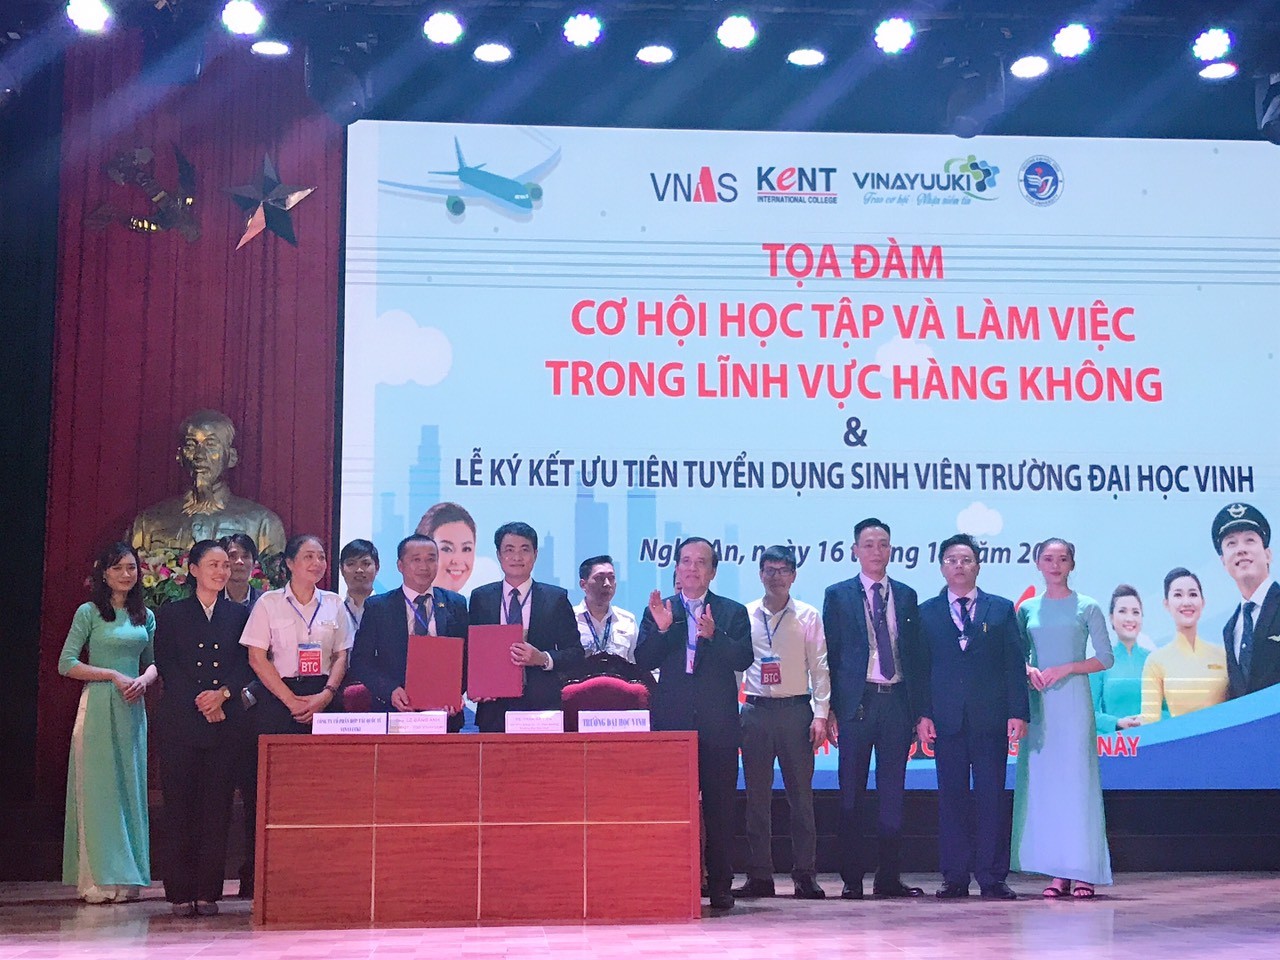 Khai mạc tọa đàm “cơ hội học tập và việc làm ngành hàng không và lễ ký kết ưu tiên tuyển dụng sinh viên Đại học Vinh” tỉnh Nghệ An